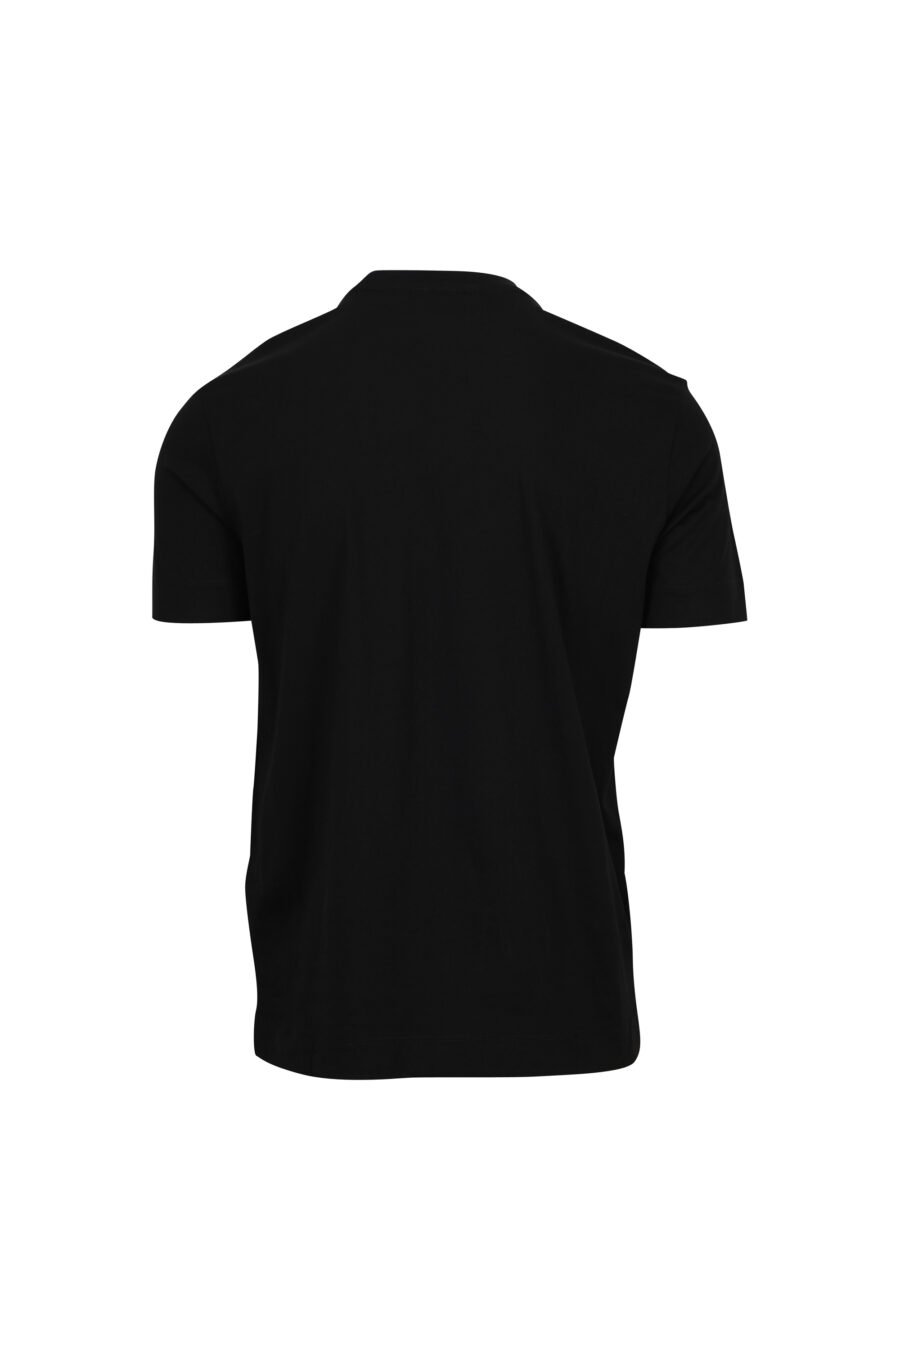 Camiseta negra con minilogo "emporio" centrado - 8058947990740 1